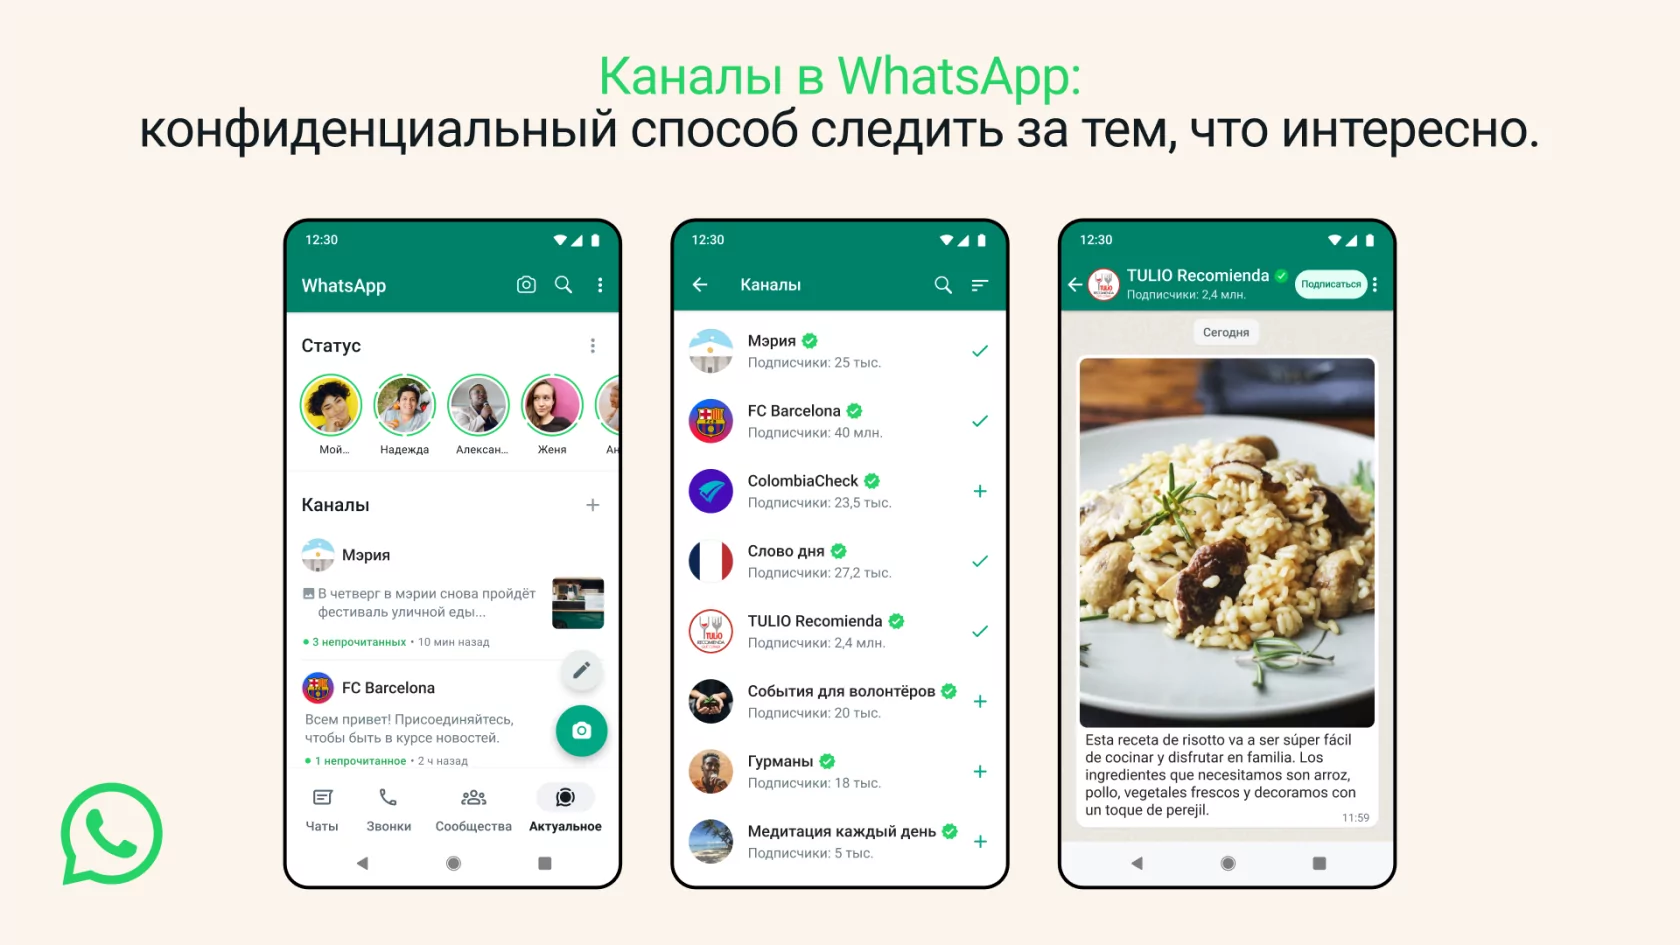 WhatsApp скопировал каналы у Telegram и других. Но сделал их удобнее